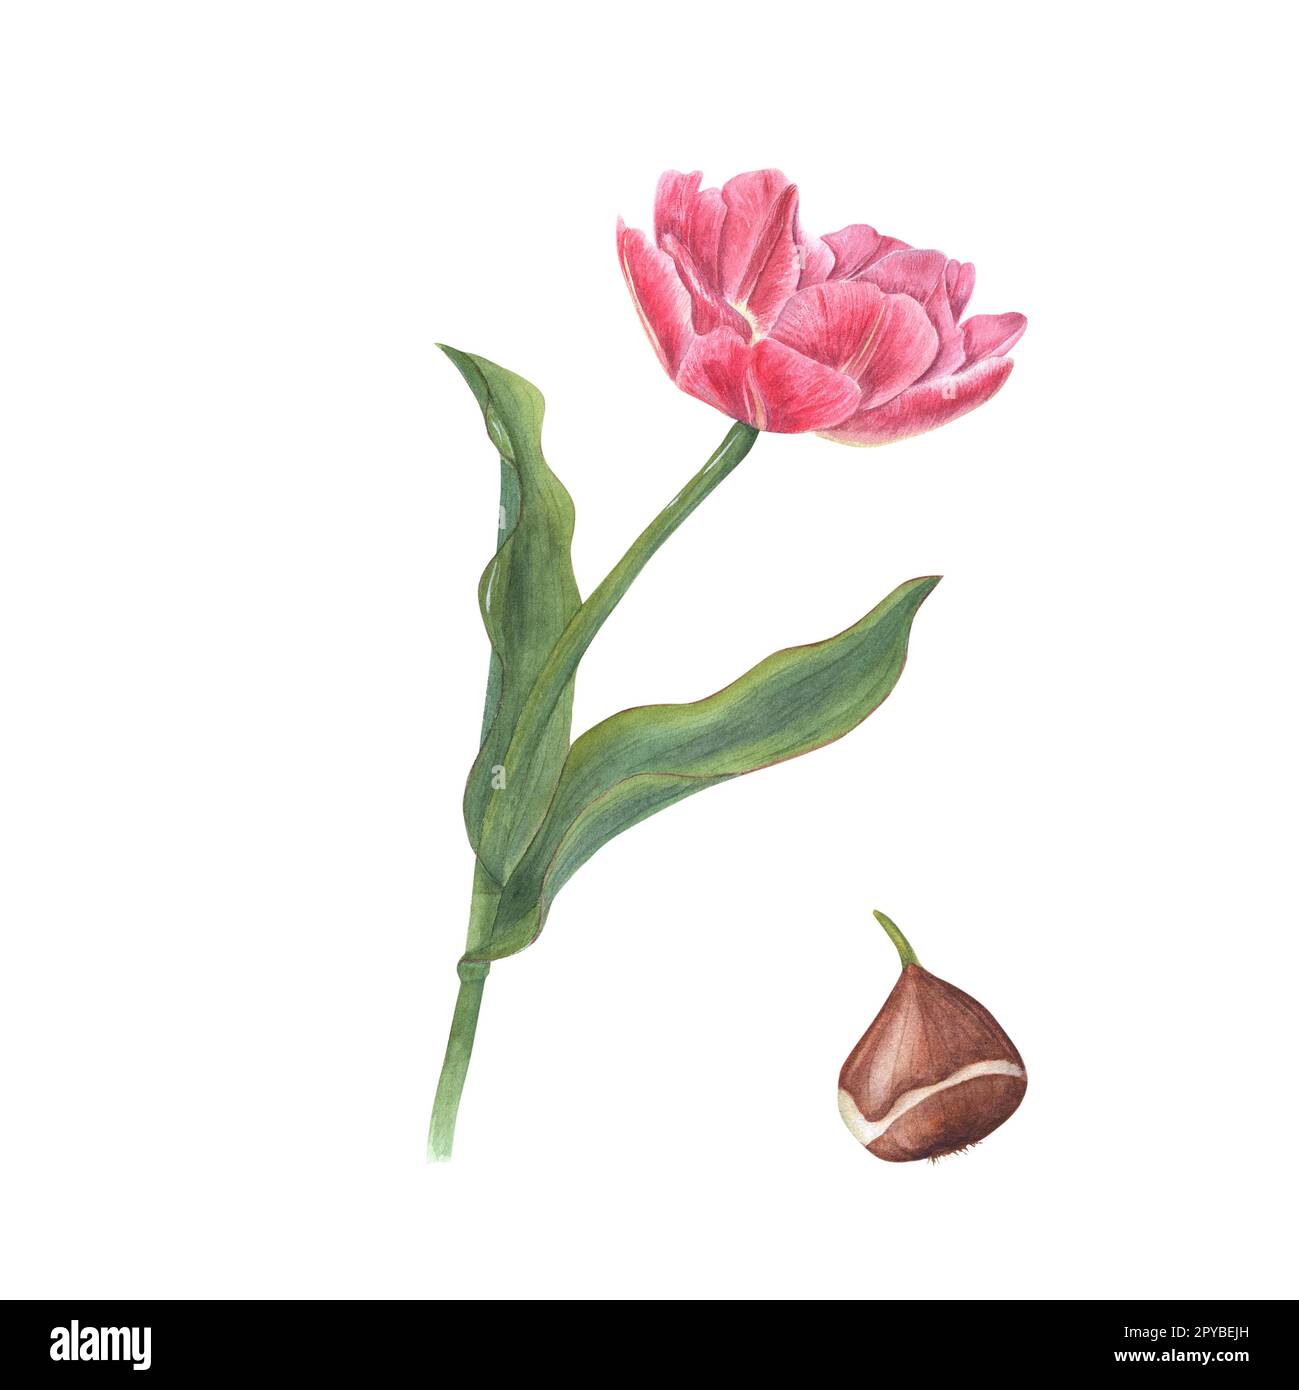 Aquarelle florale printemps illustration de tulipe rose avec bulbe isolé sur fond blanc. Parfait pour le papier peint, textile, pour la conception de magazine Banque D'Images